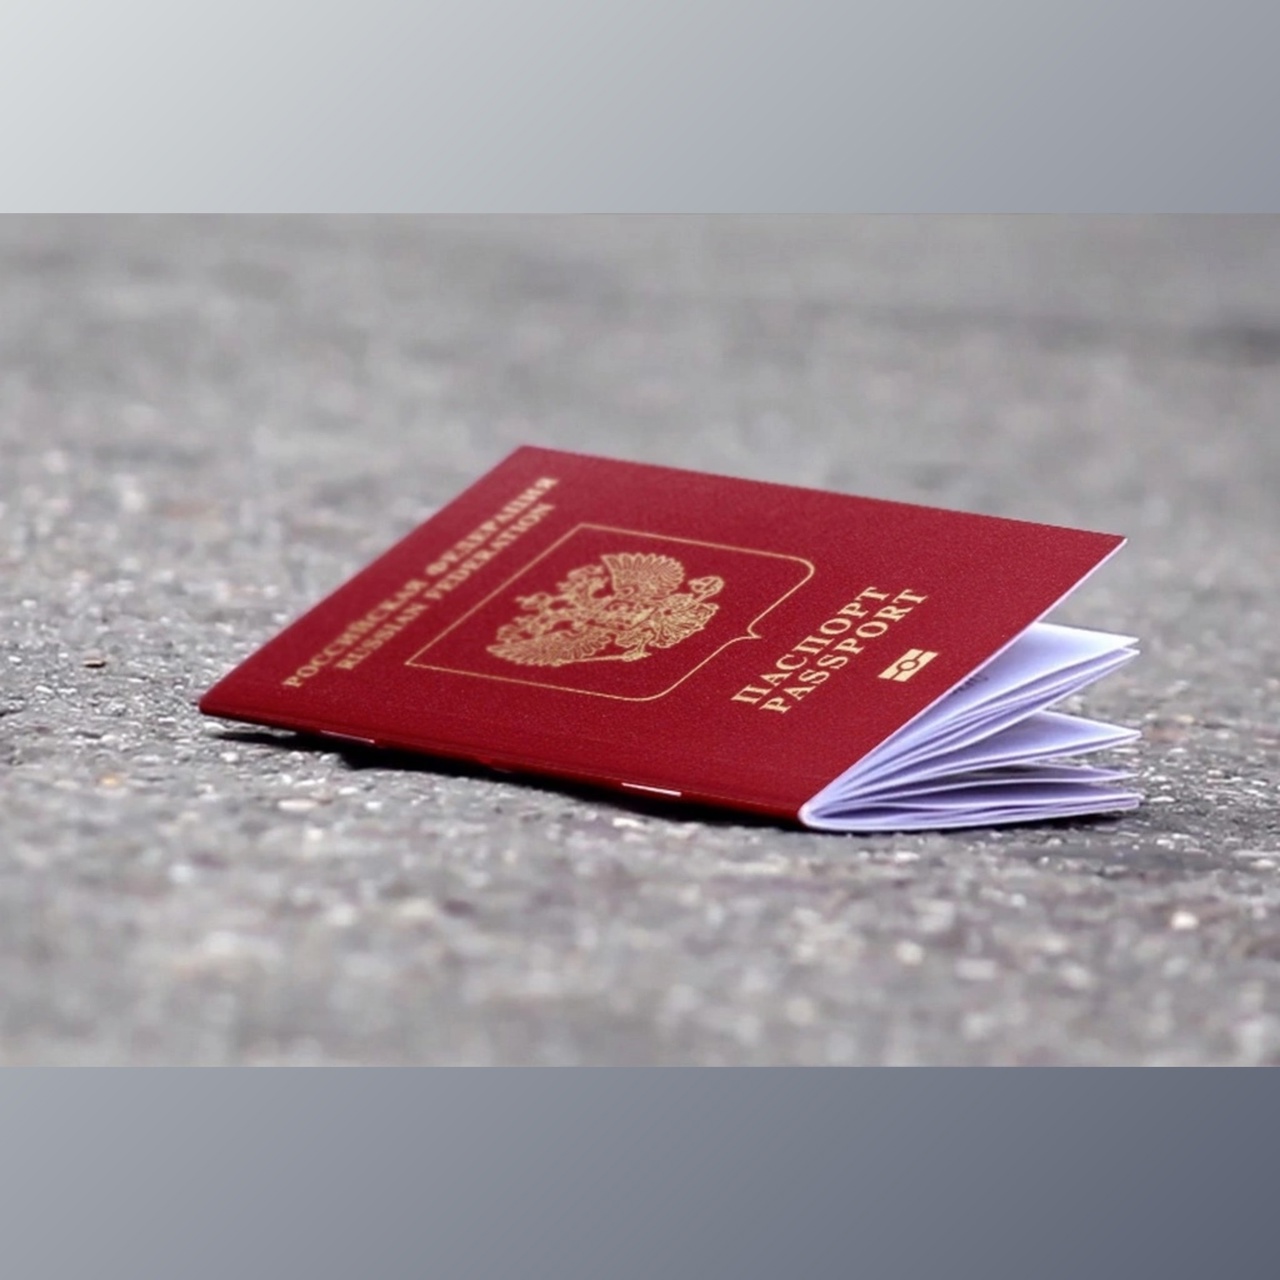 Что делать, если потерял паспорт: исчерпывающее руководство на все случаи жизни - Лайфхакер